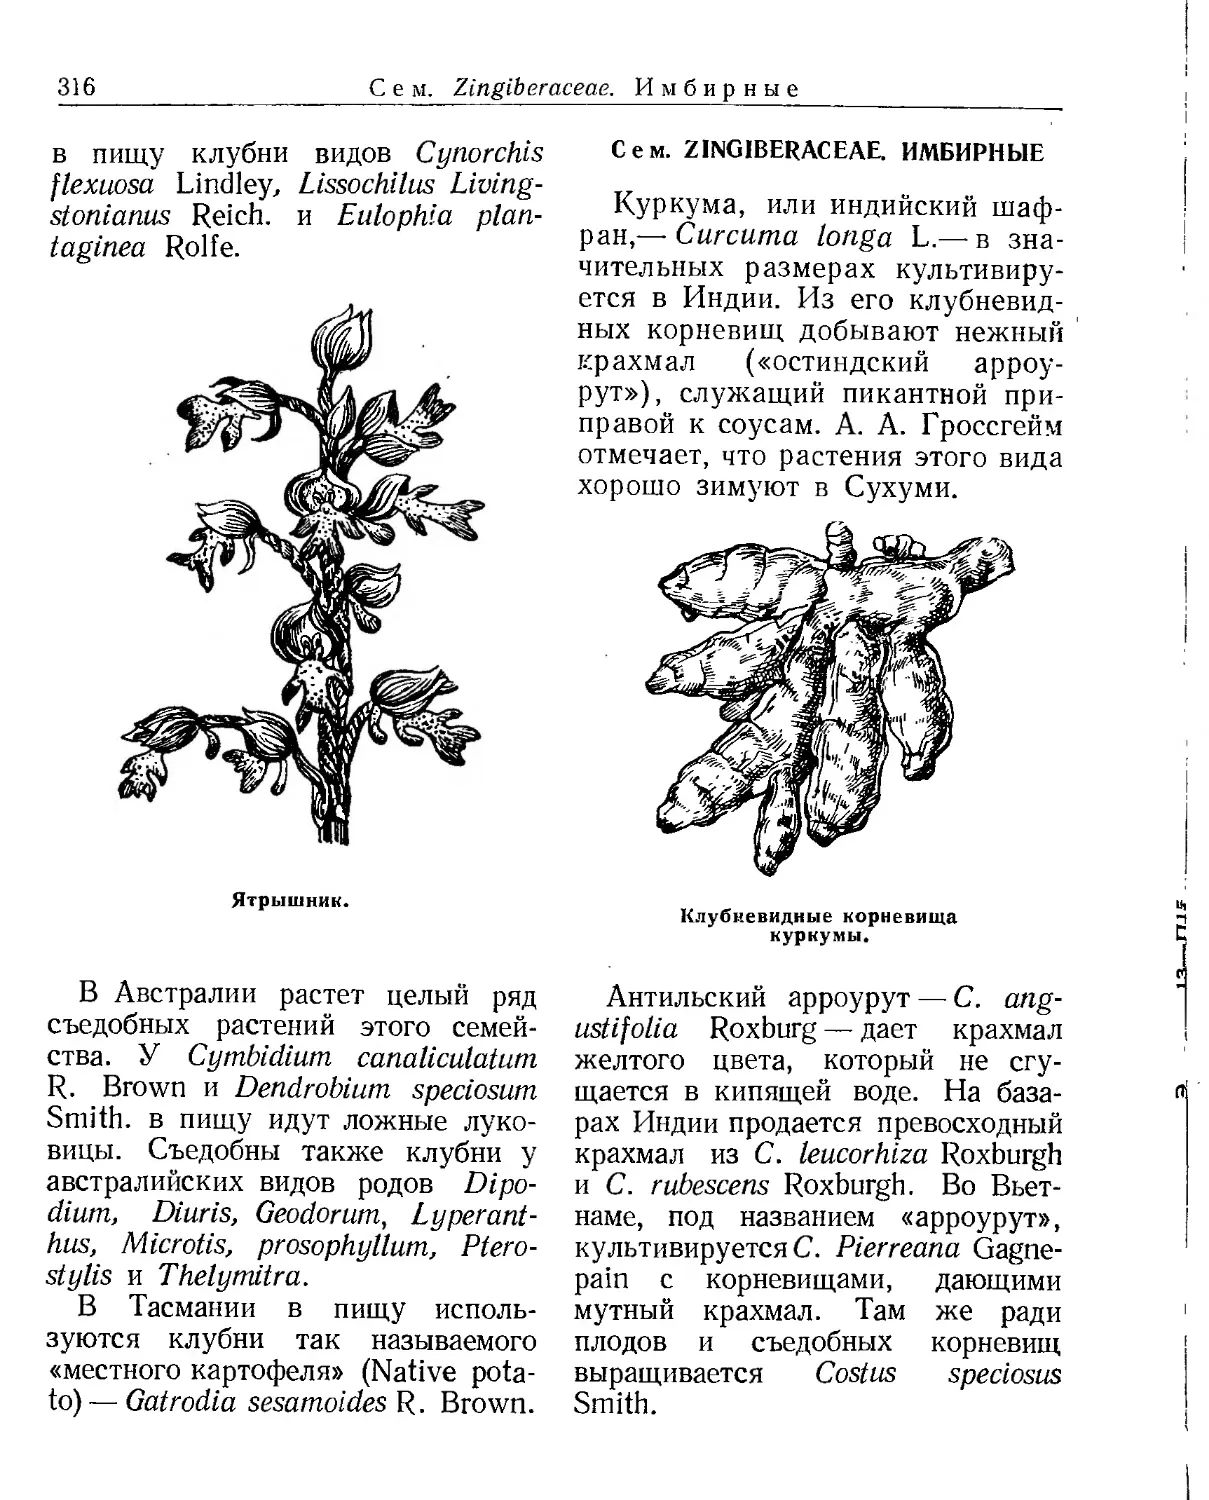 Сем. Zingiberaceae. Имбирные